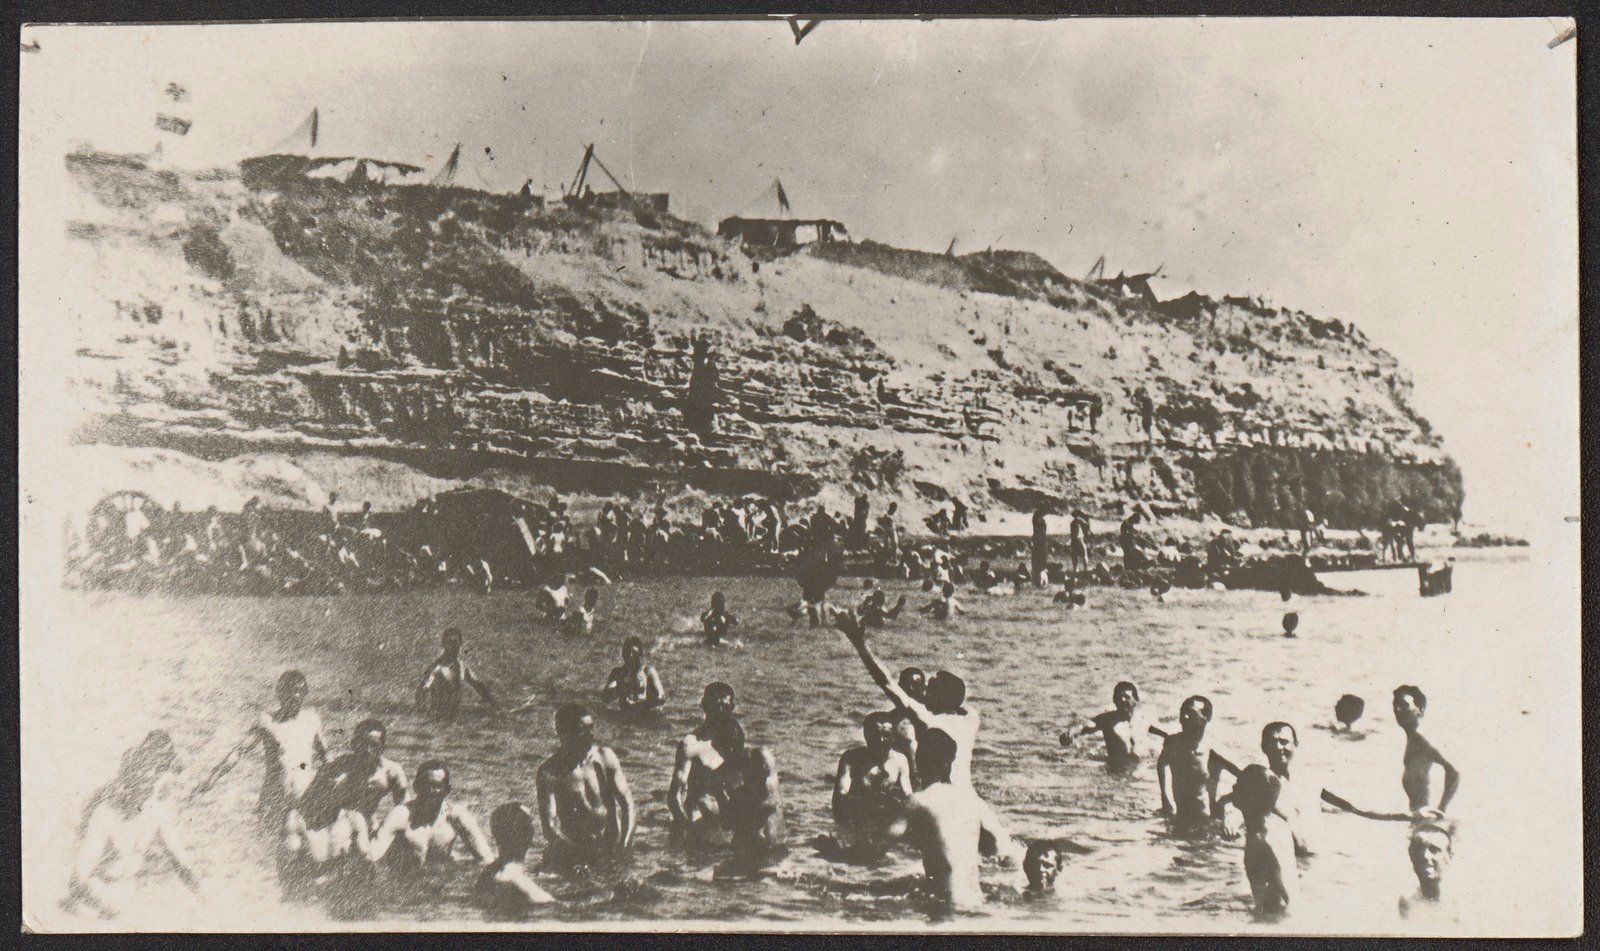 Australians bathing at Cape Helles